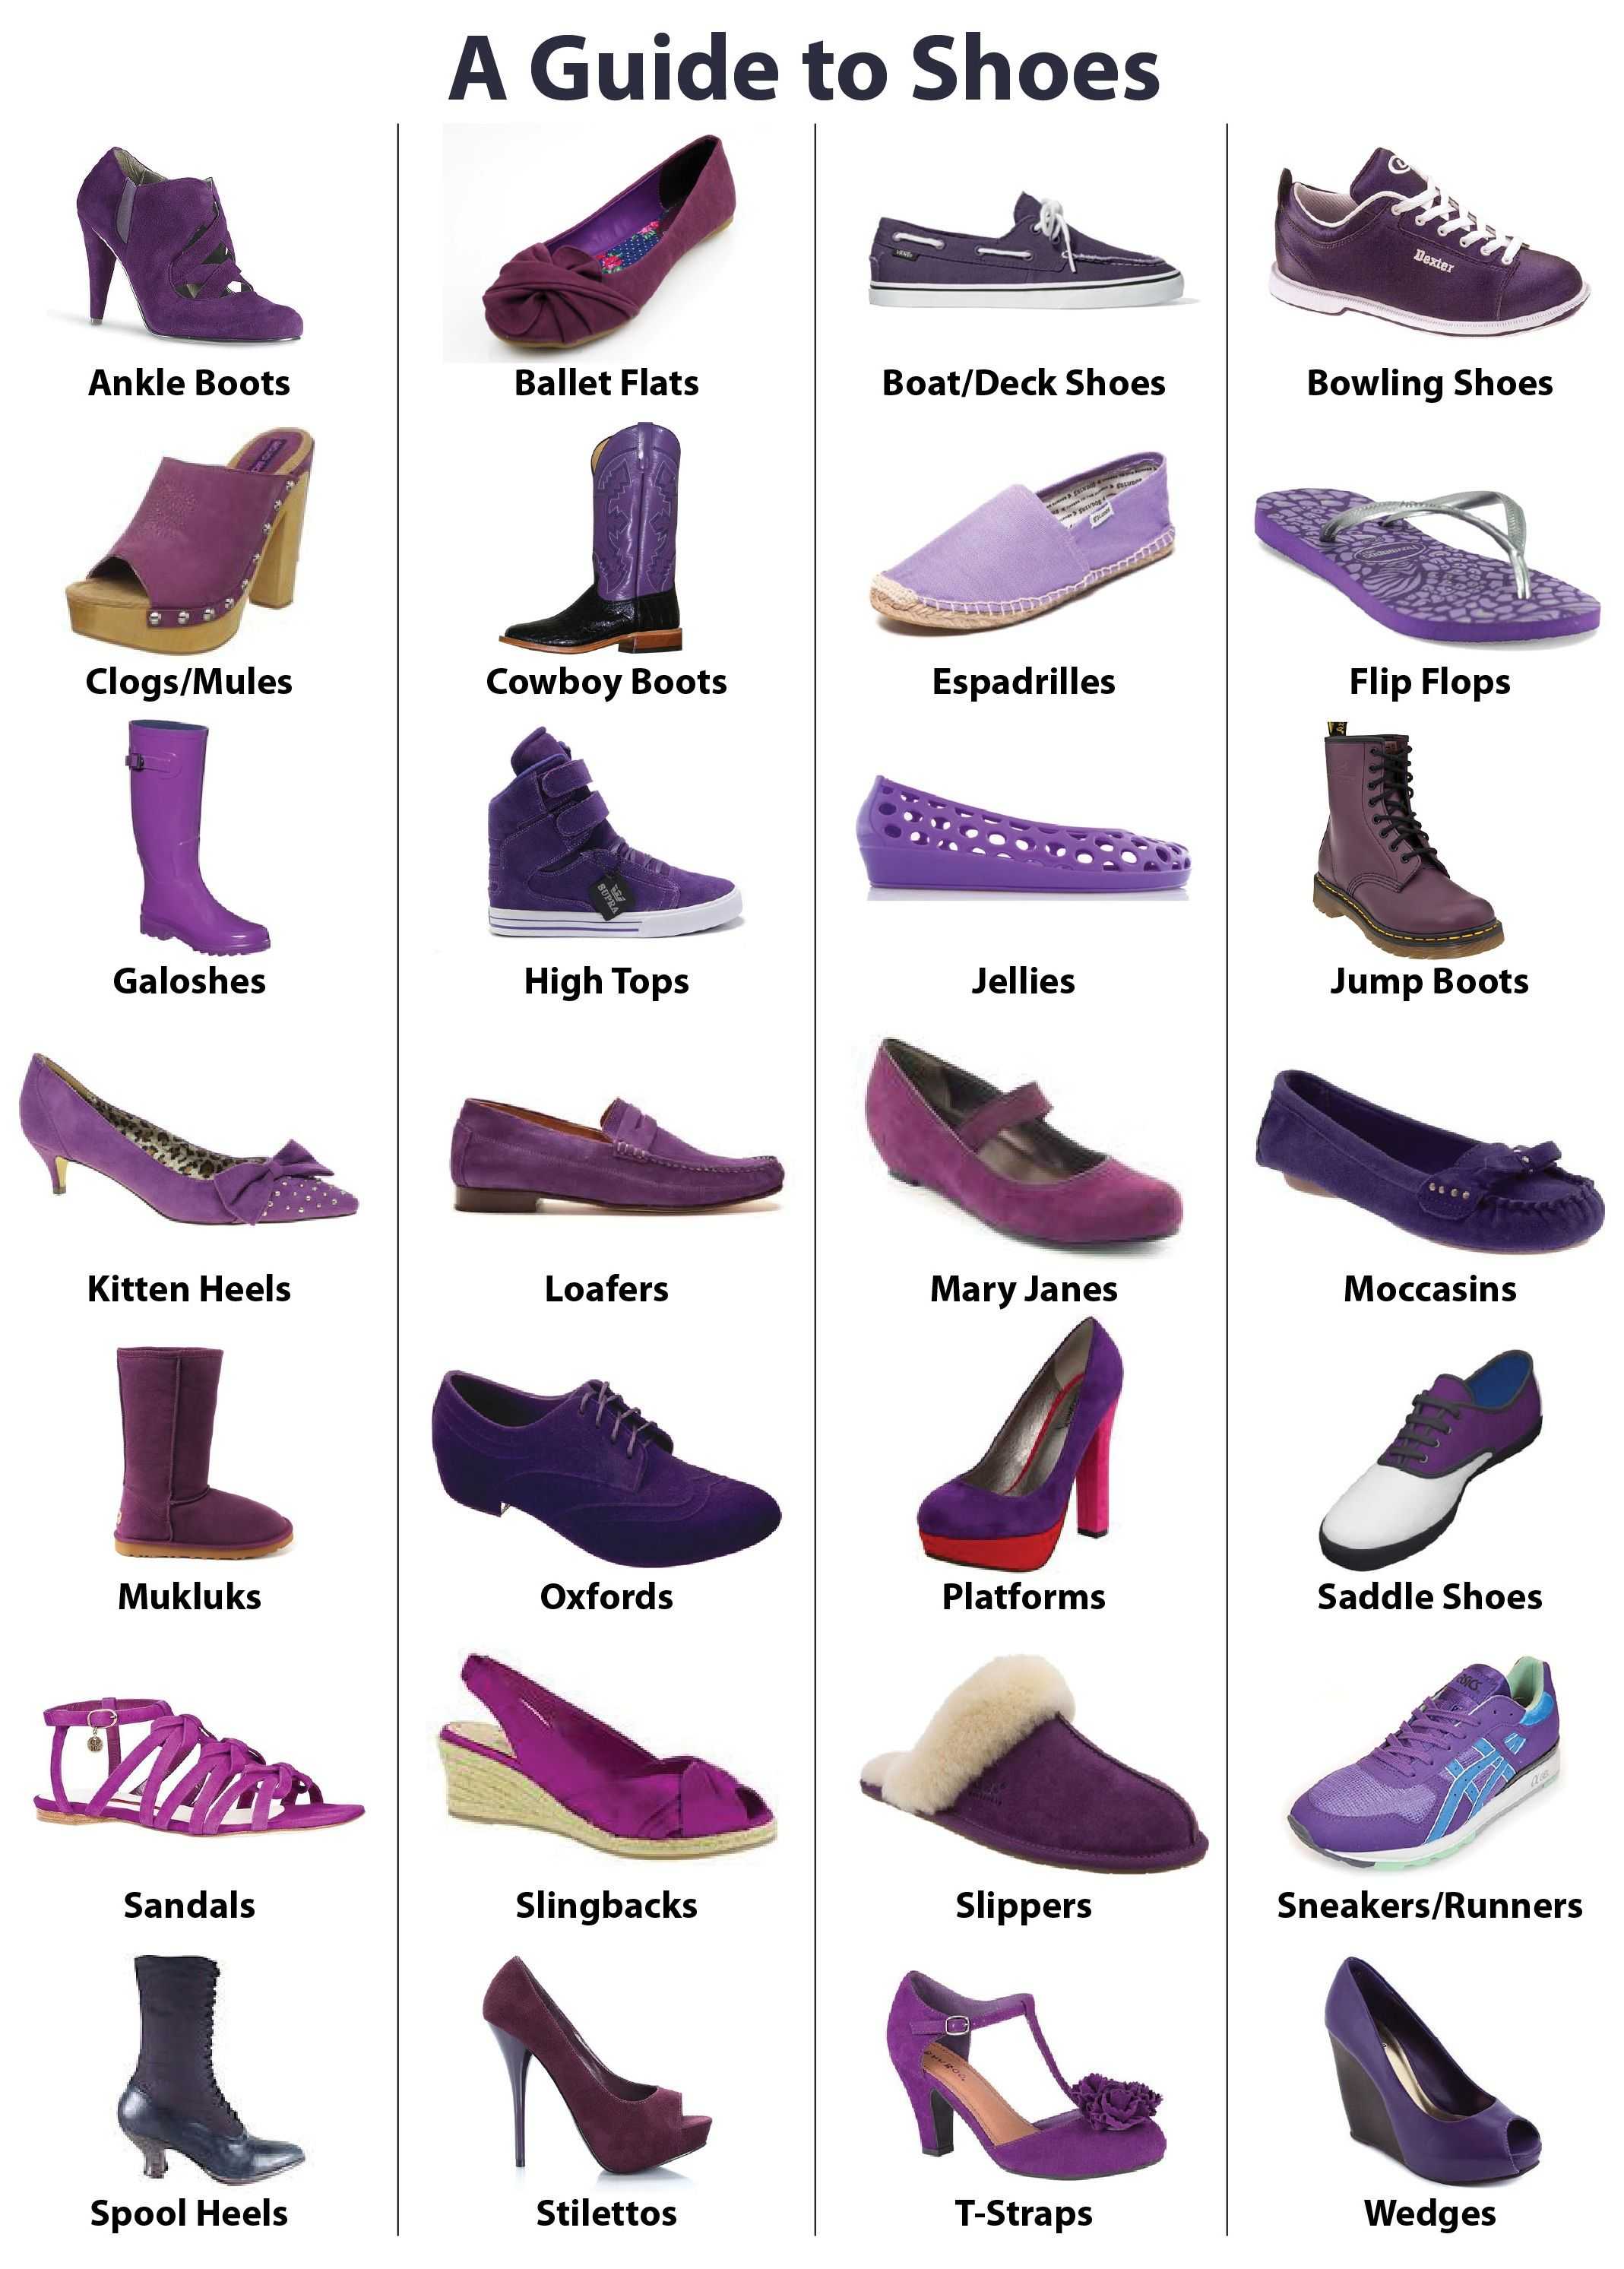 Название летней женской обуви. Виды женской обуви. Типы женской обуви названия. Название ботинок женских. Современные названия обуви.